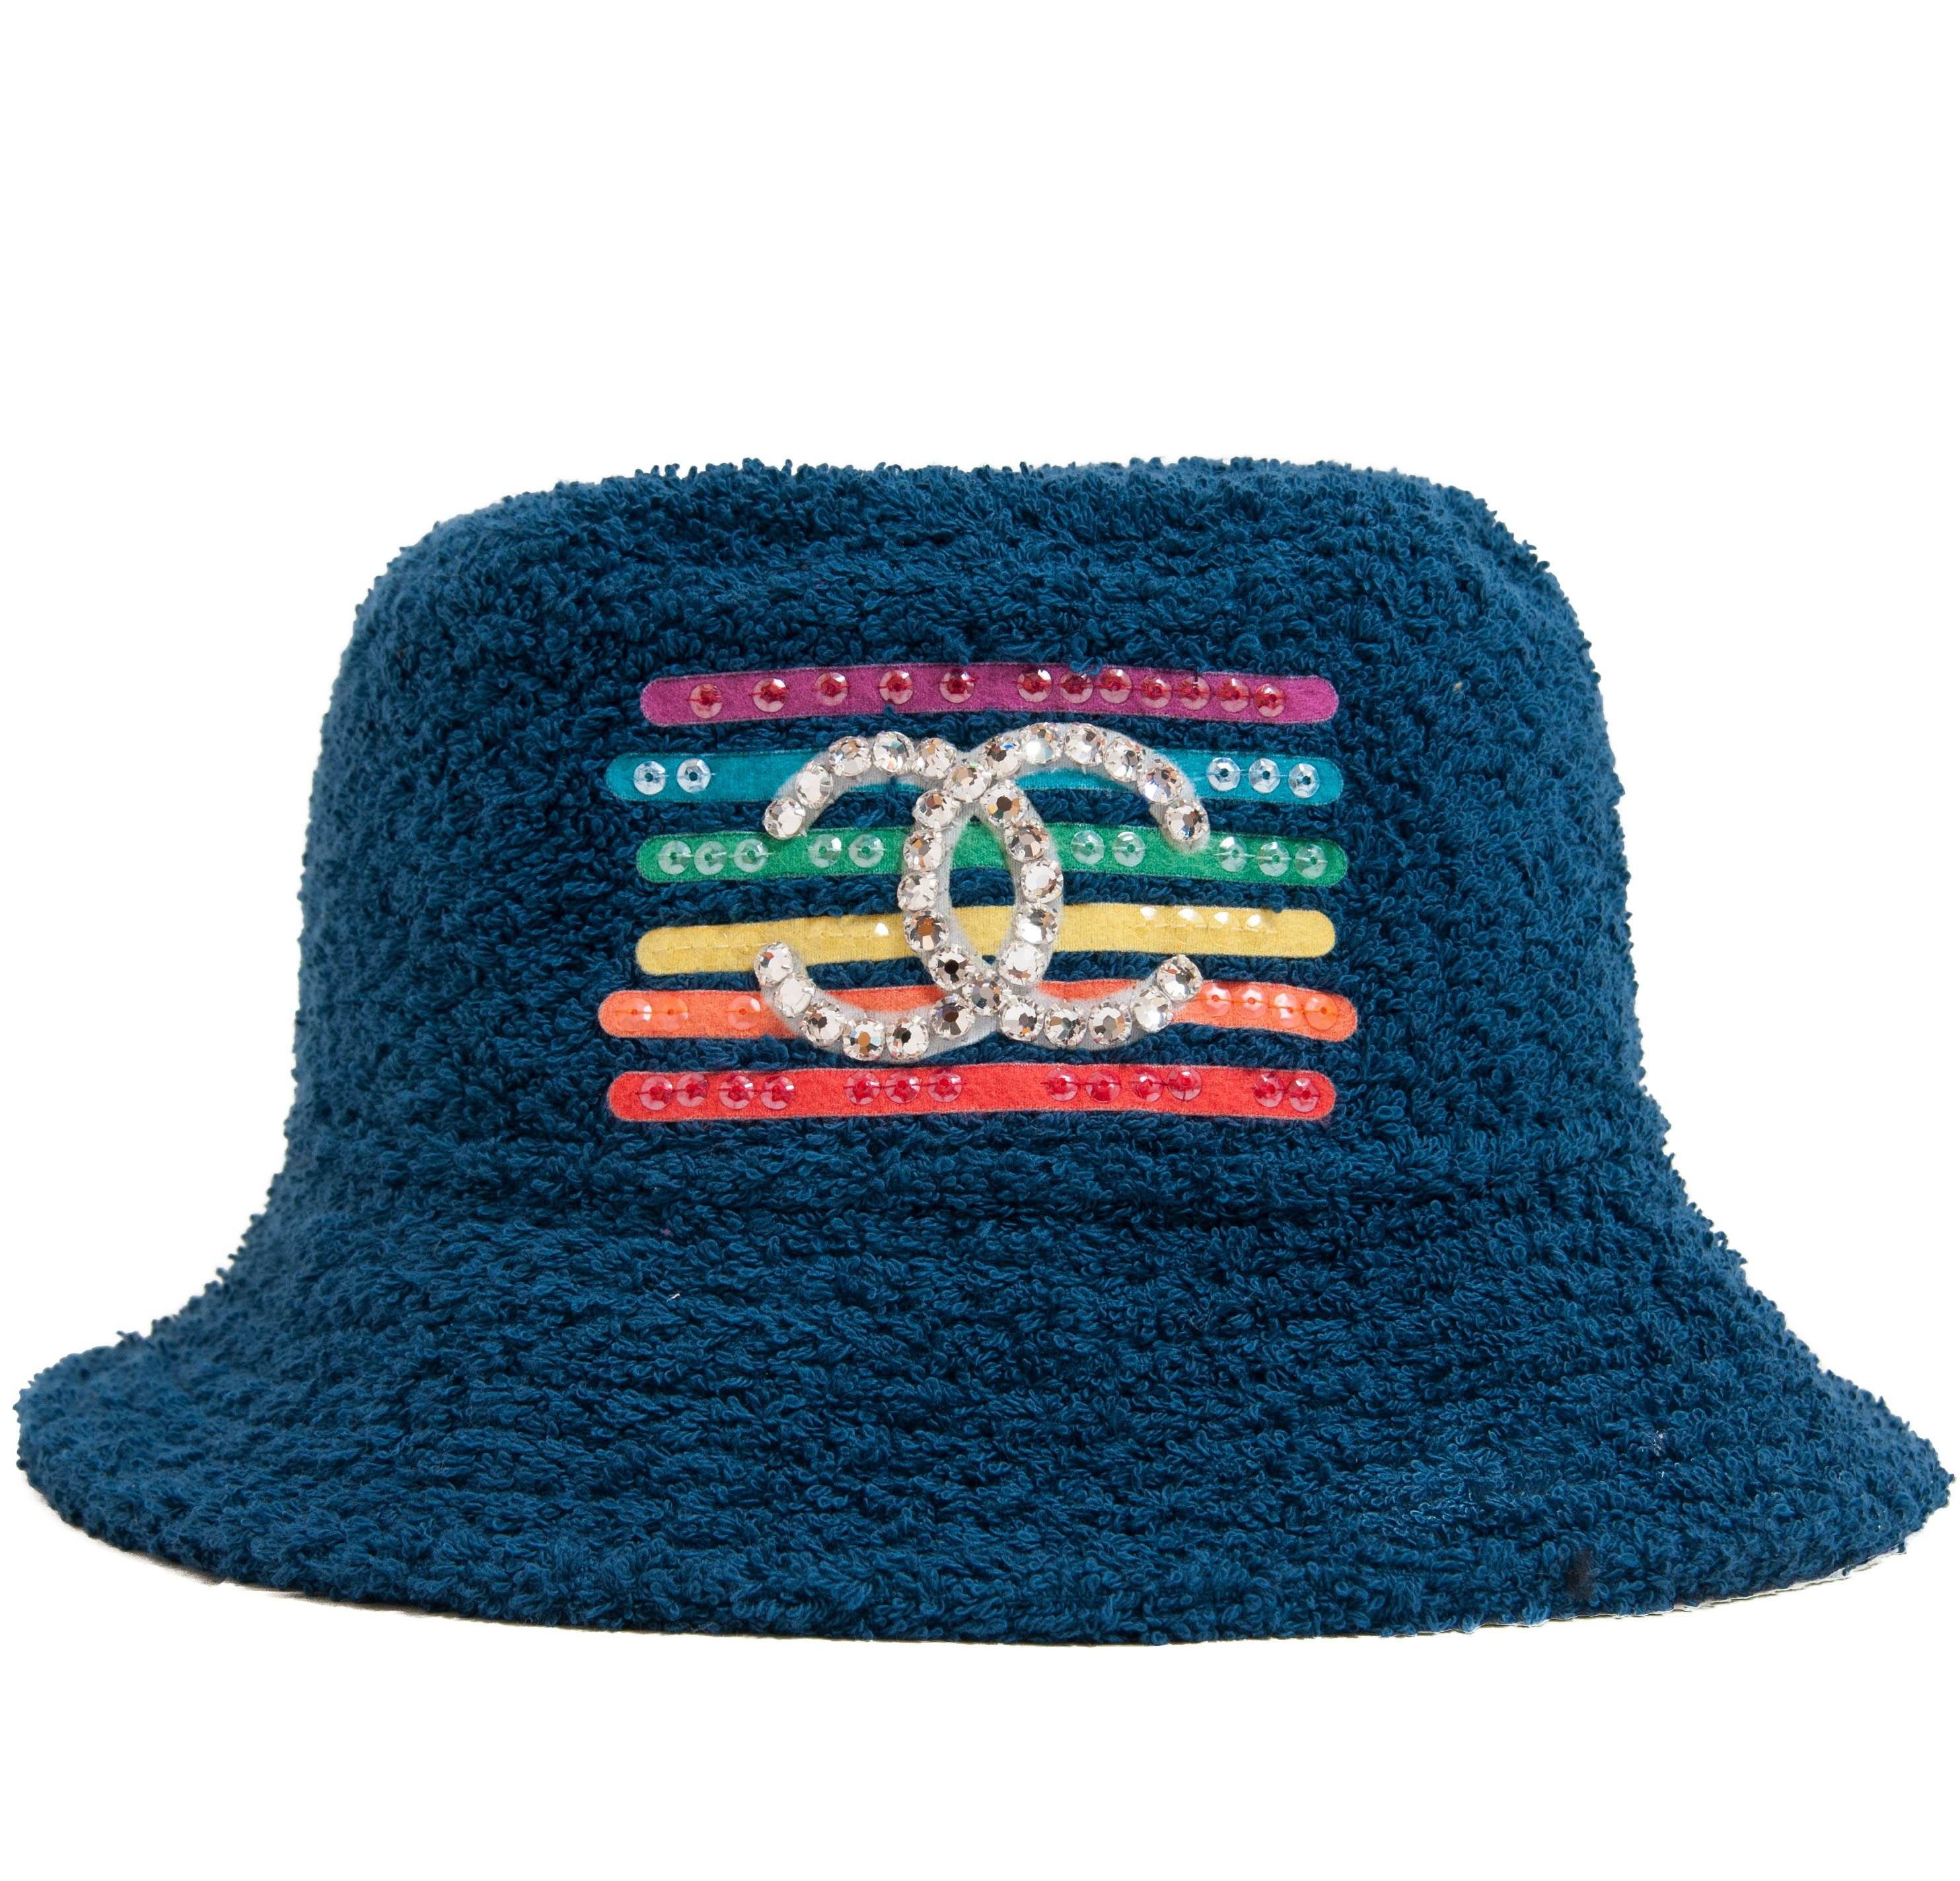 ✭ on X: chanel bucket hats  / X